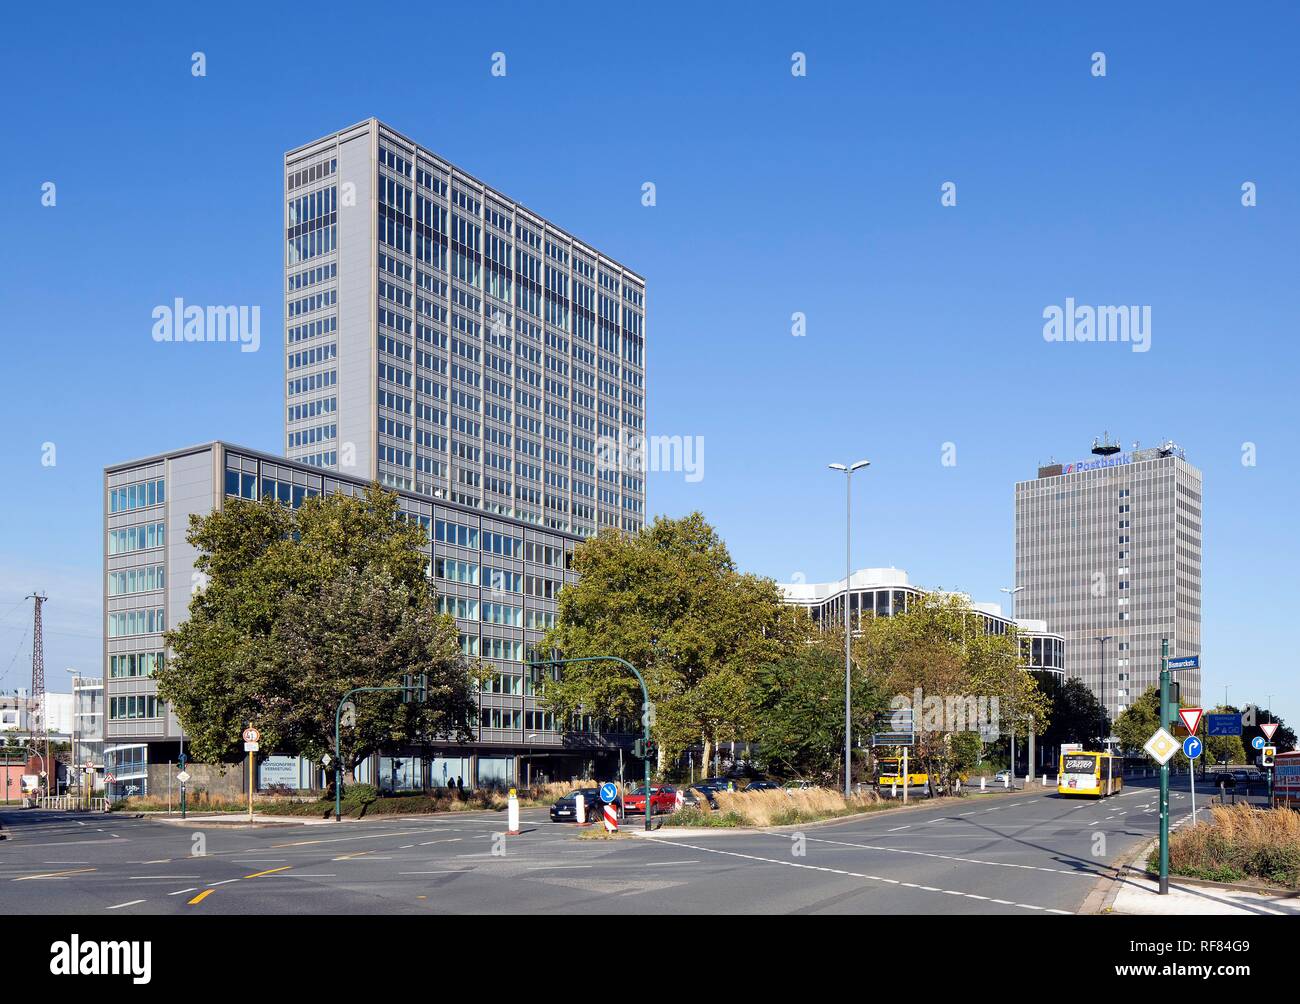 Rheinstahlhaus, torre di uffici del Gruppo ThyssenKrupp e assegno postale ufficio o Postbank Tower, Essen, la zona della Ruhr Foto Stock